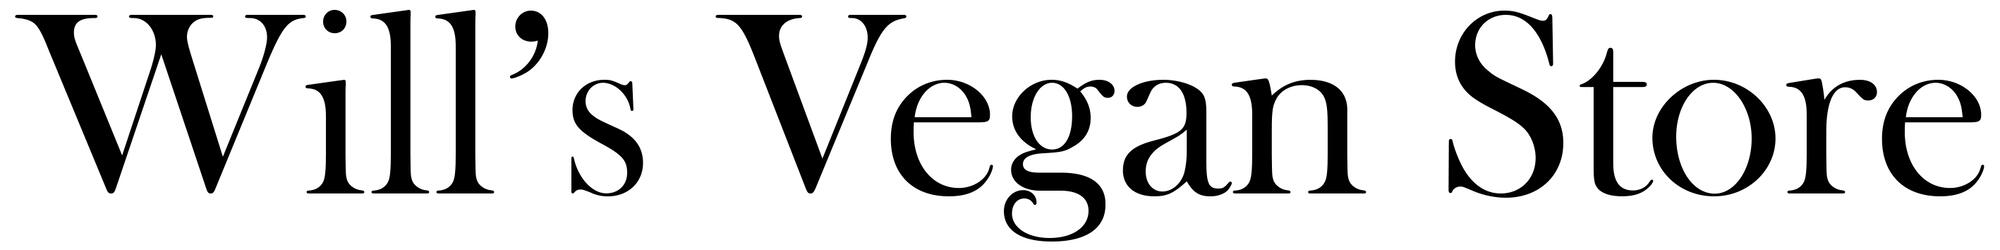 Will's Vegan Store 